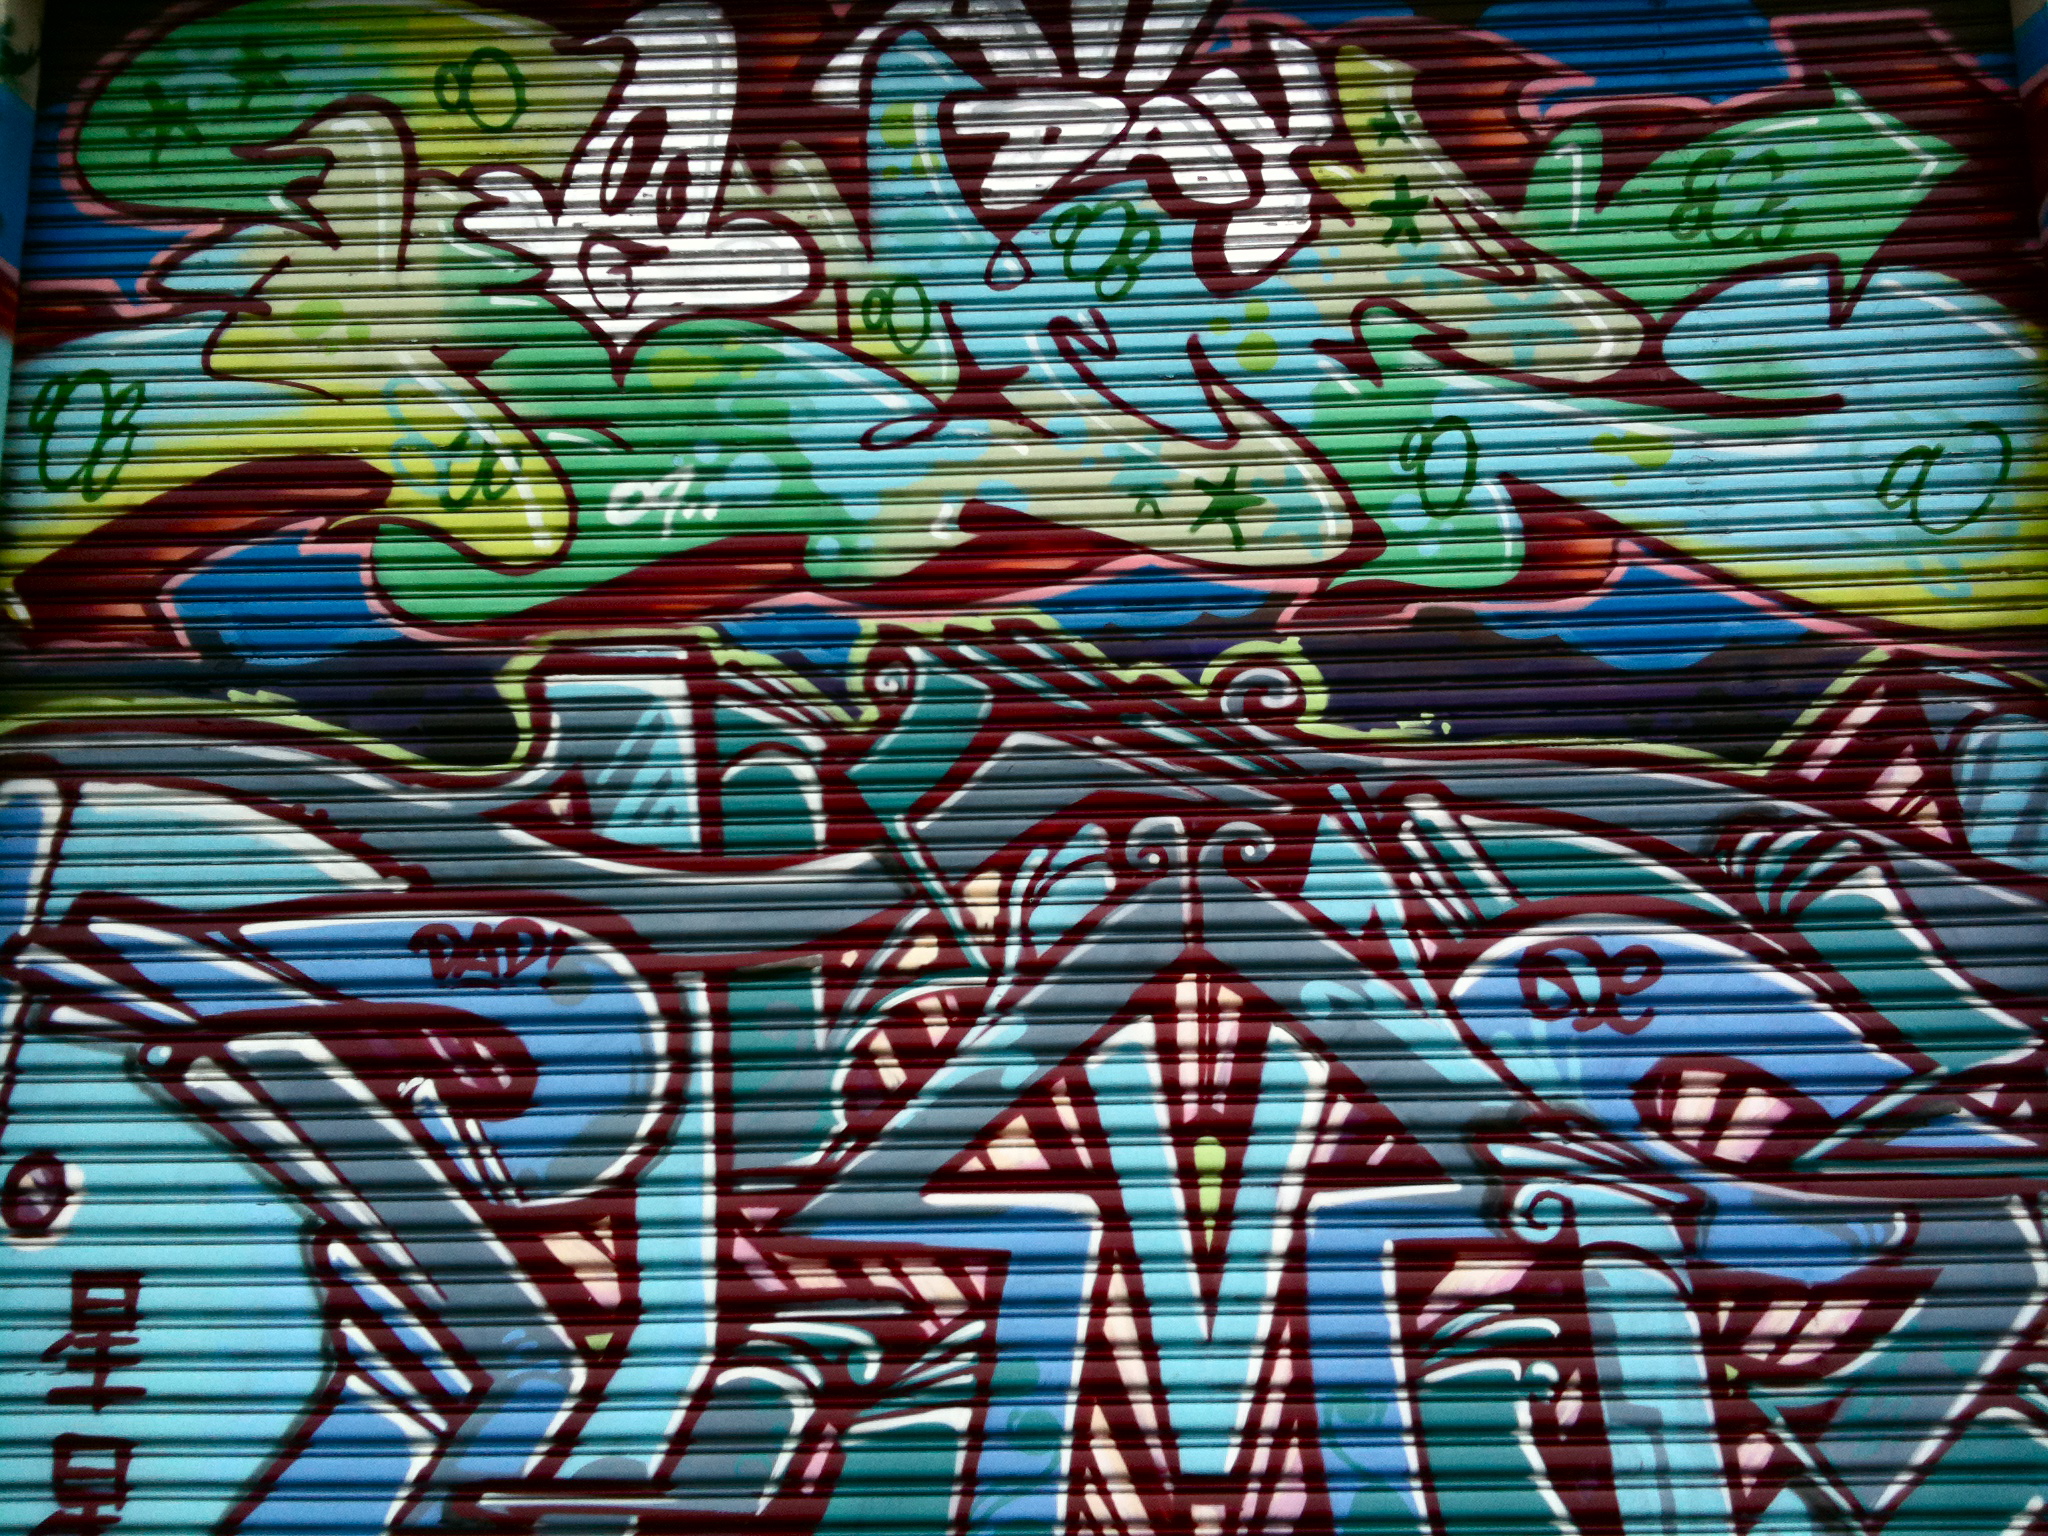 SFO Graffiti (I)